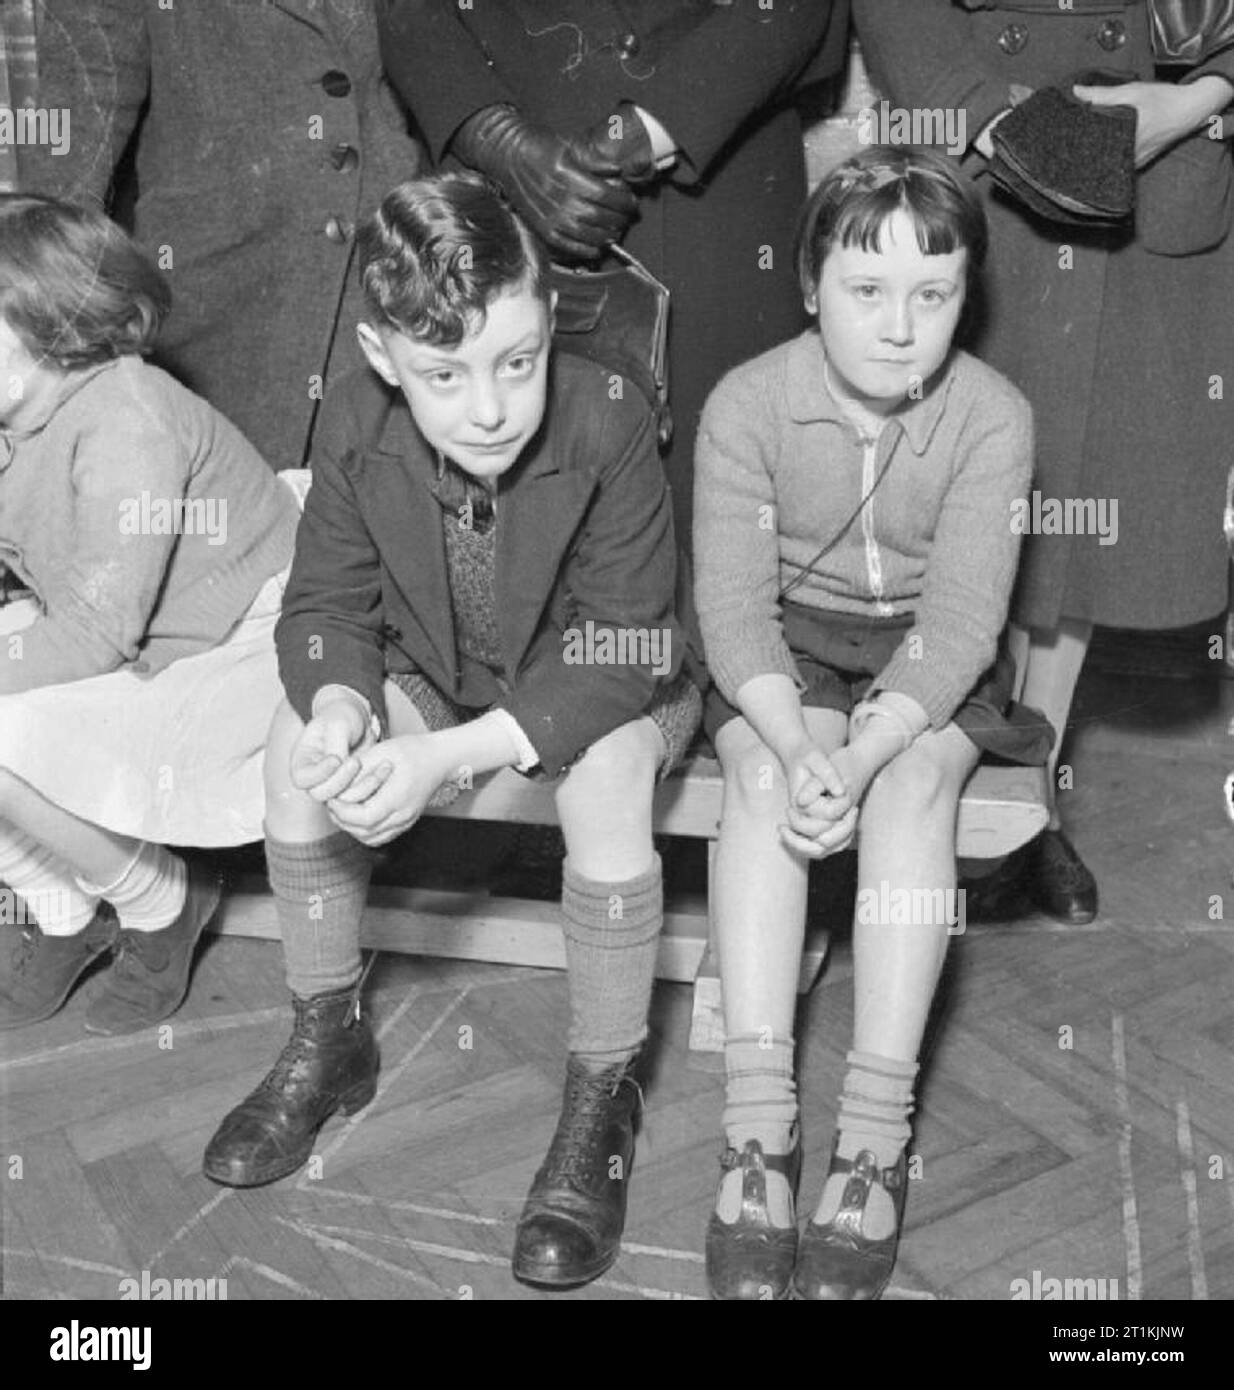 Diphtherie- Impfung Regelung, London, England, 1941 Ronald Ford (7 Jahre) und einem Freund auf einer Bank sitzen, die wiederum mit der Krankenschwester zu erwarten. Sie sind etwa gegen Diphtherie in Argyle Street School Klinik, 7. Mai 1941 immunisiert werden. Stockfoto